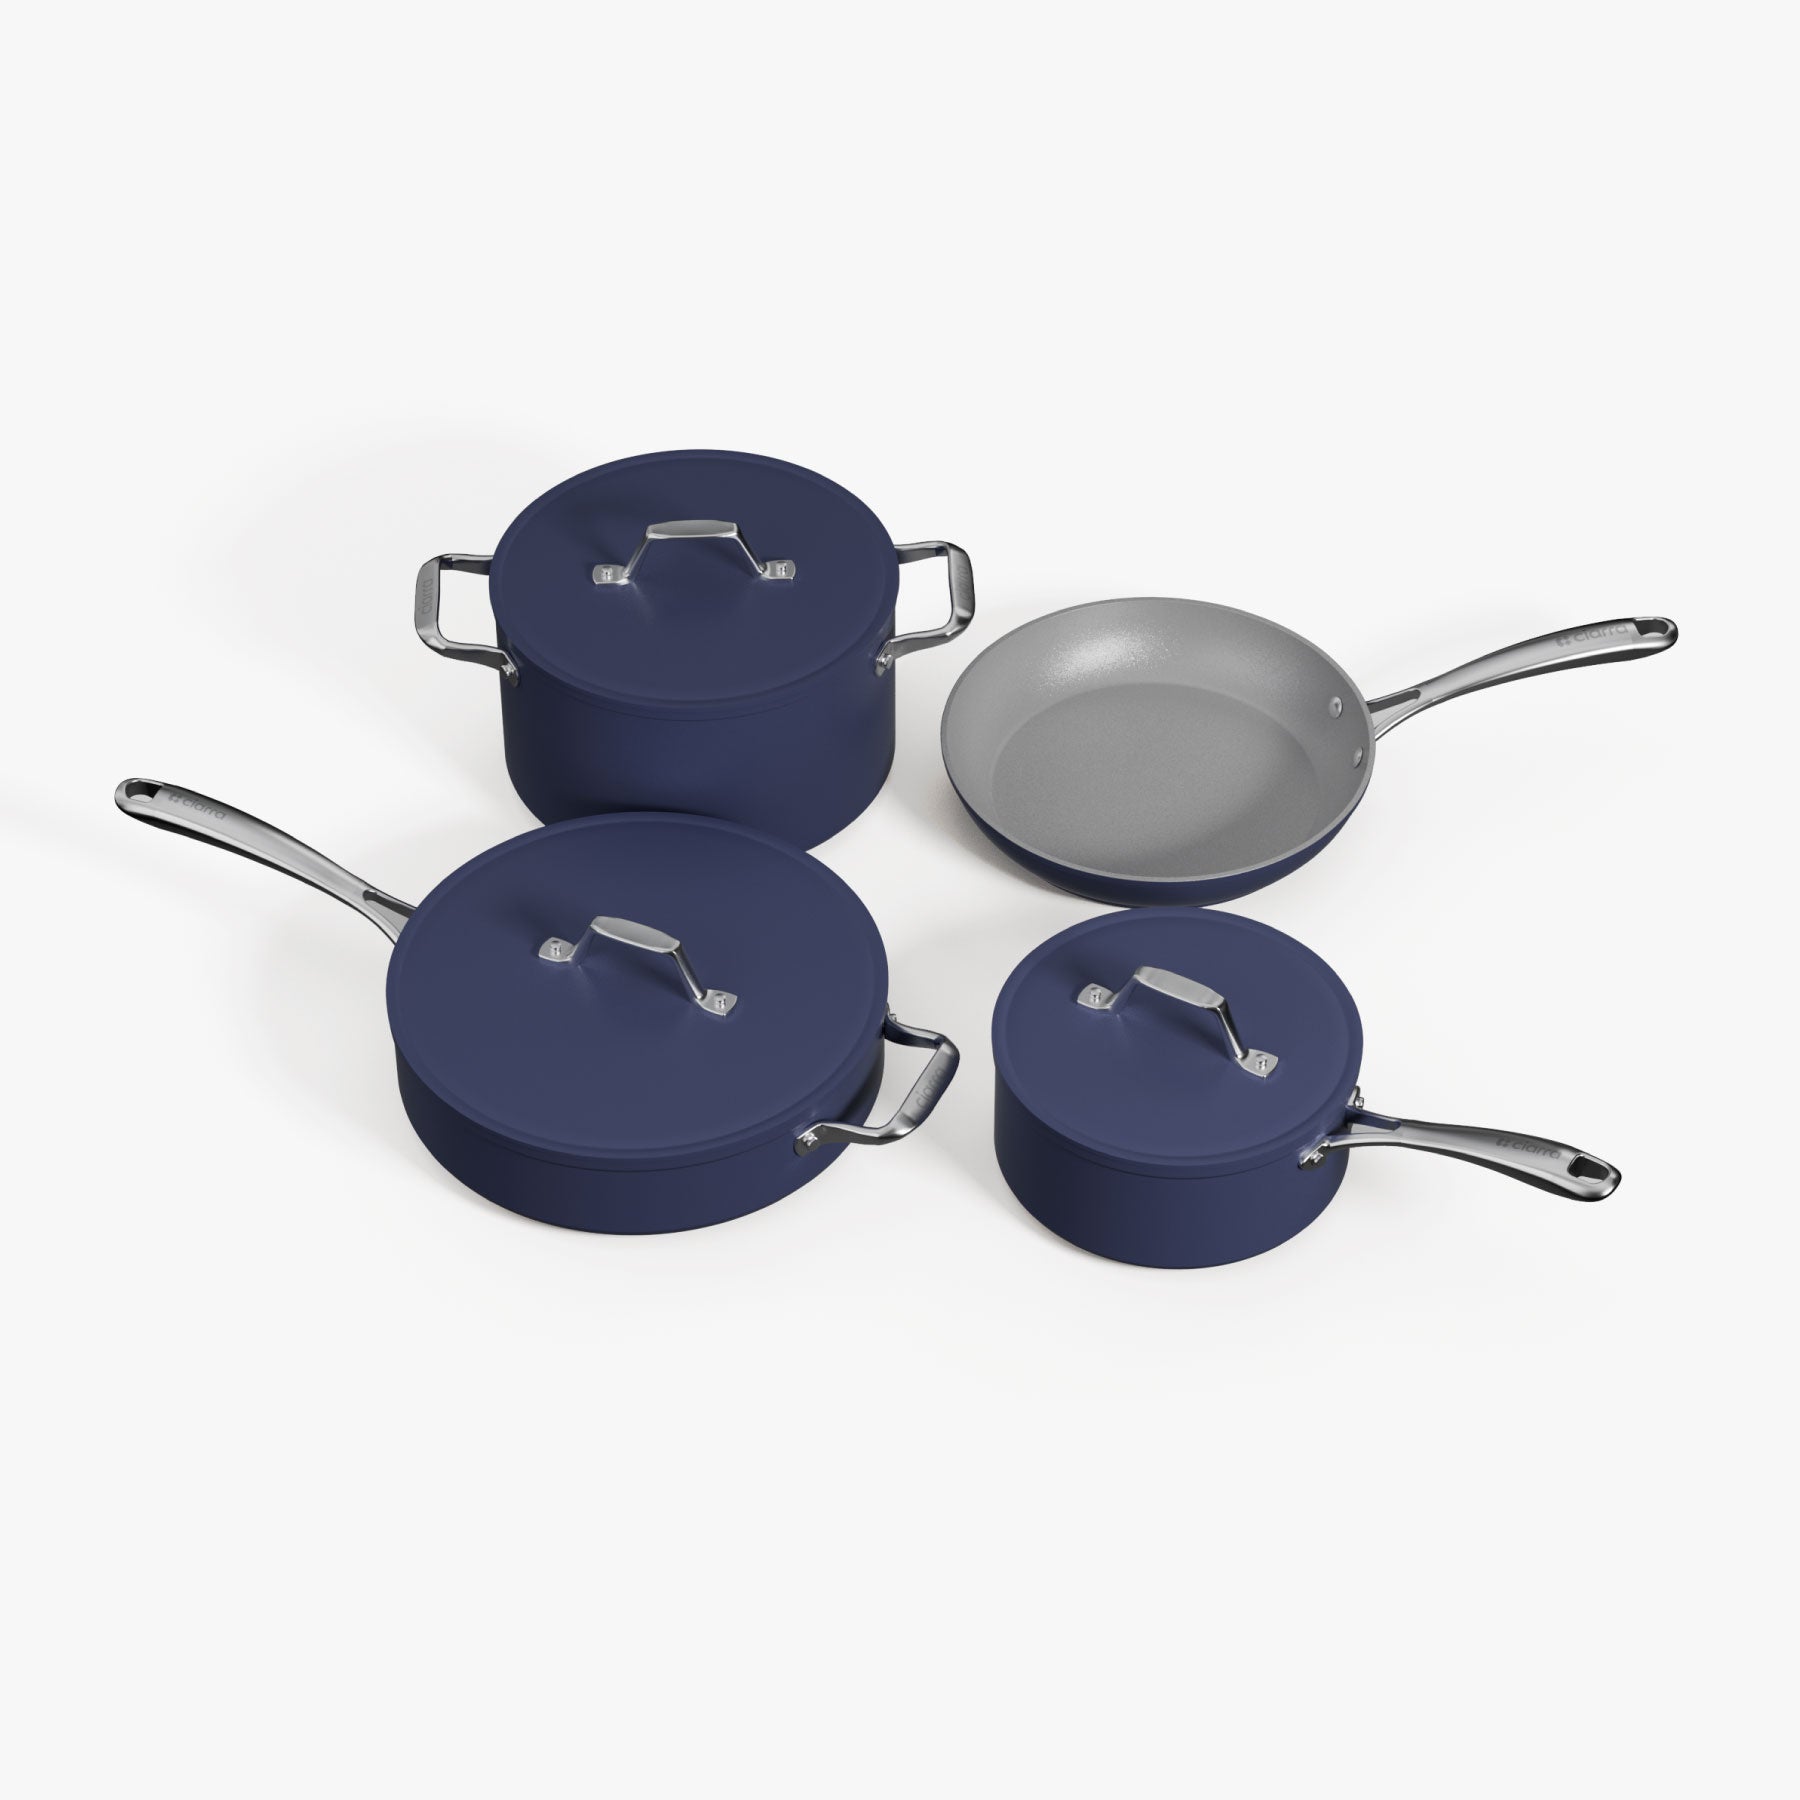 Caraway Home Mini Duo Non-Stick Ceramic Fry & Sauce Pan Set - Black